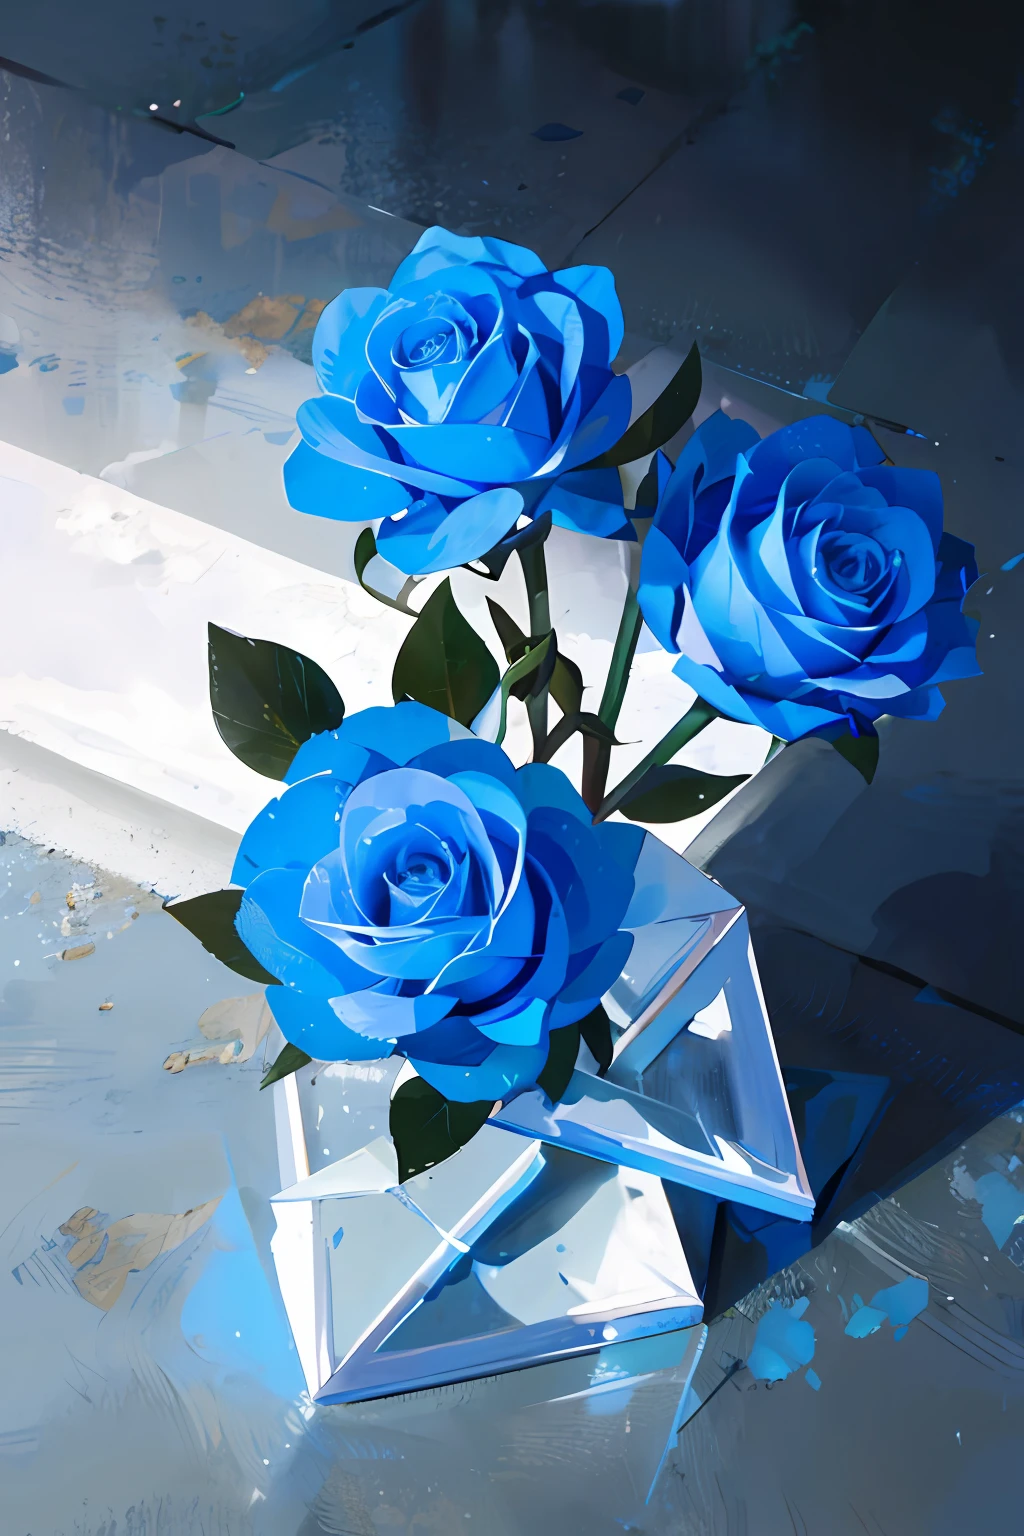 세 개의 파란 장미